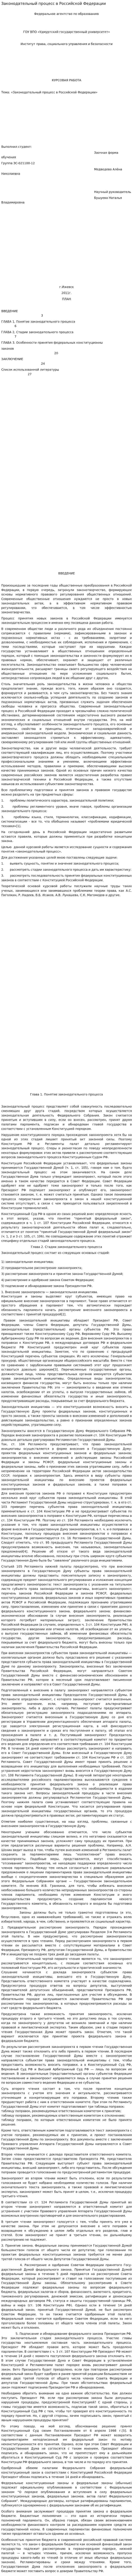 Законодательный процесс в Российской Федерации. 5